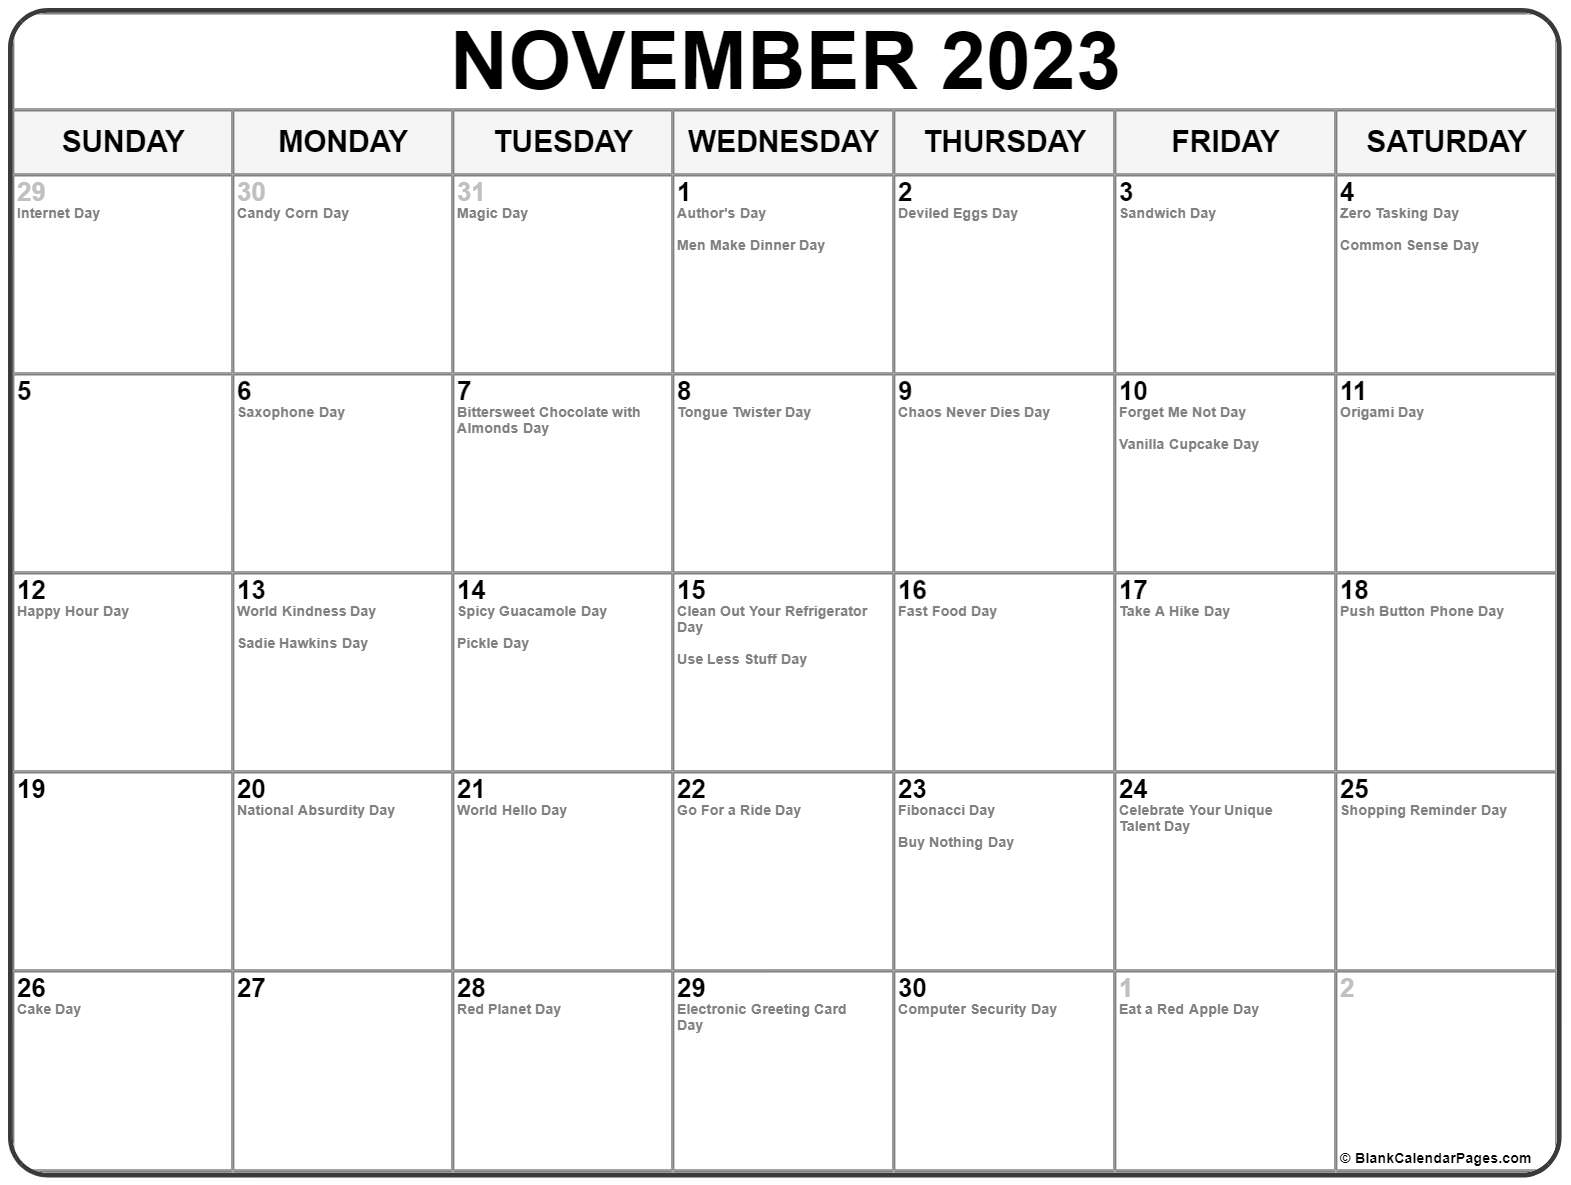 Calendar Of November 2023 With Festivals